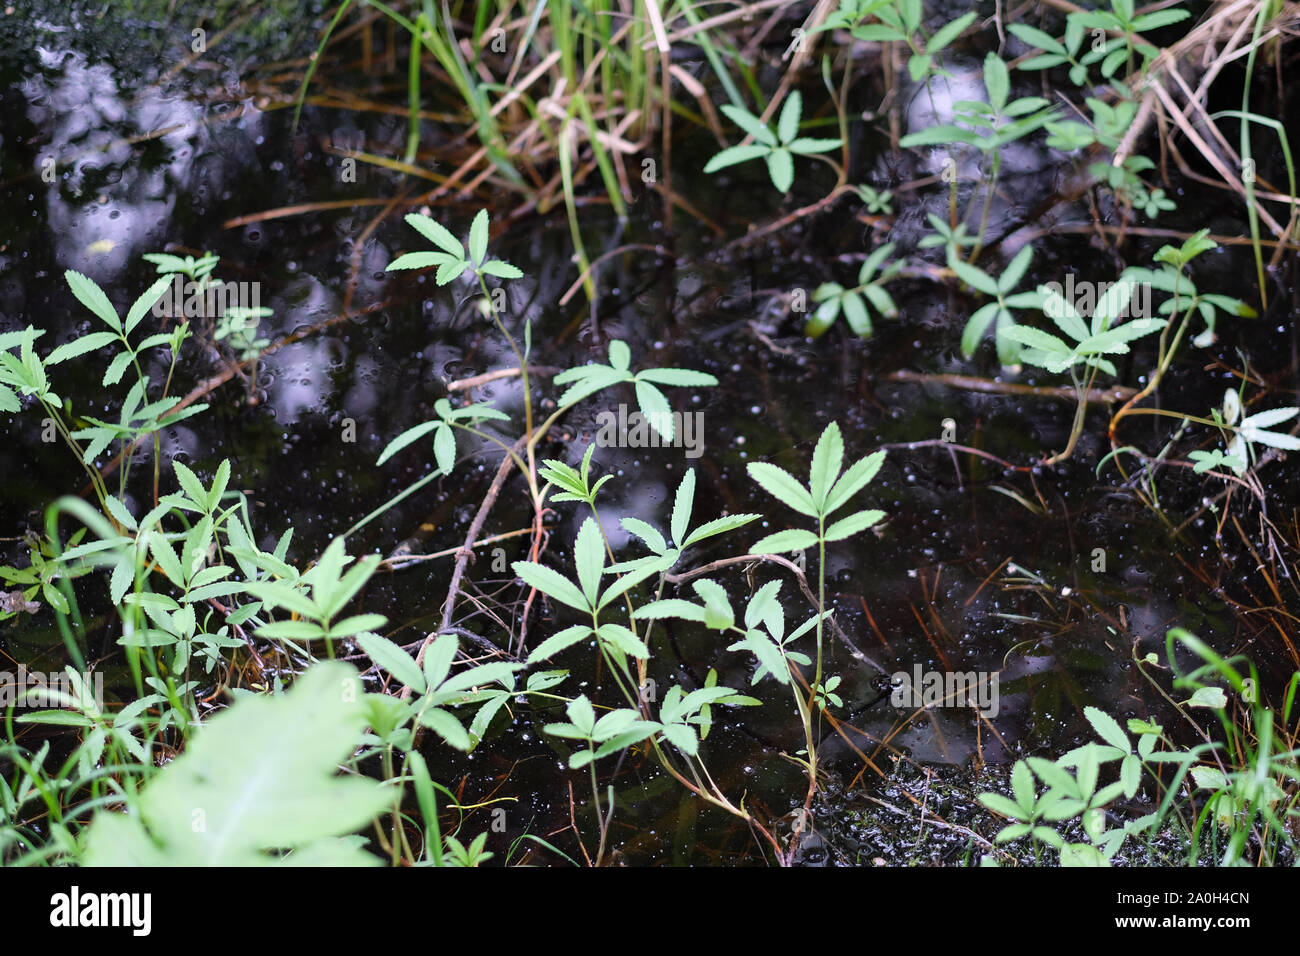 Krautigen Pflanzen auf nassen sumpfigen Boden im Wald Stockfotografie -  Alamy